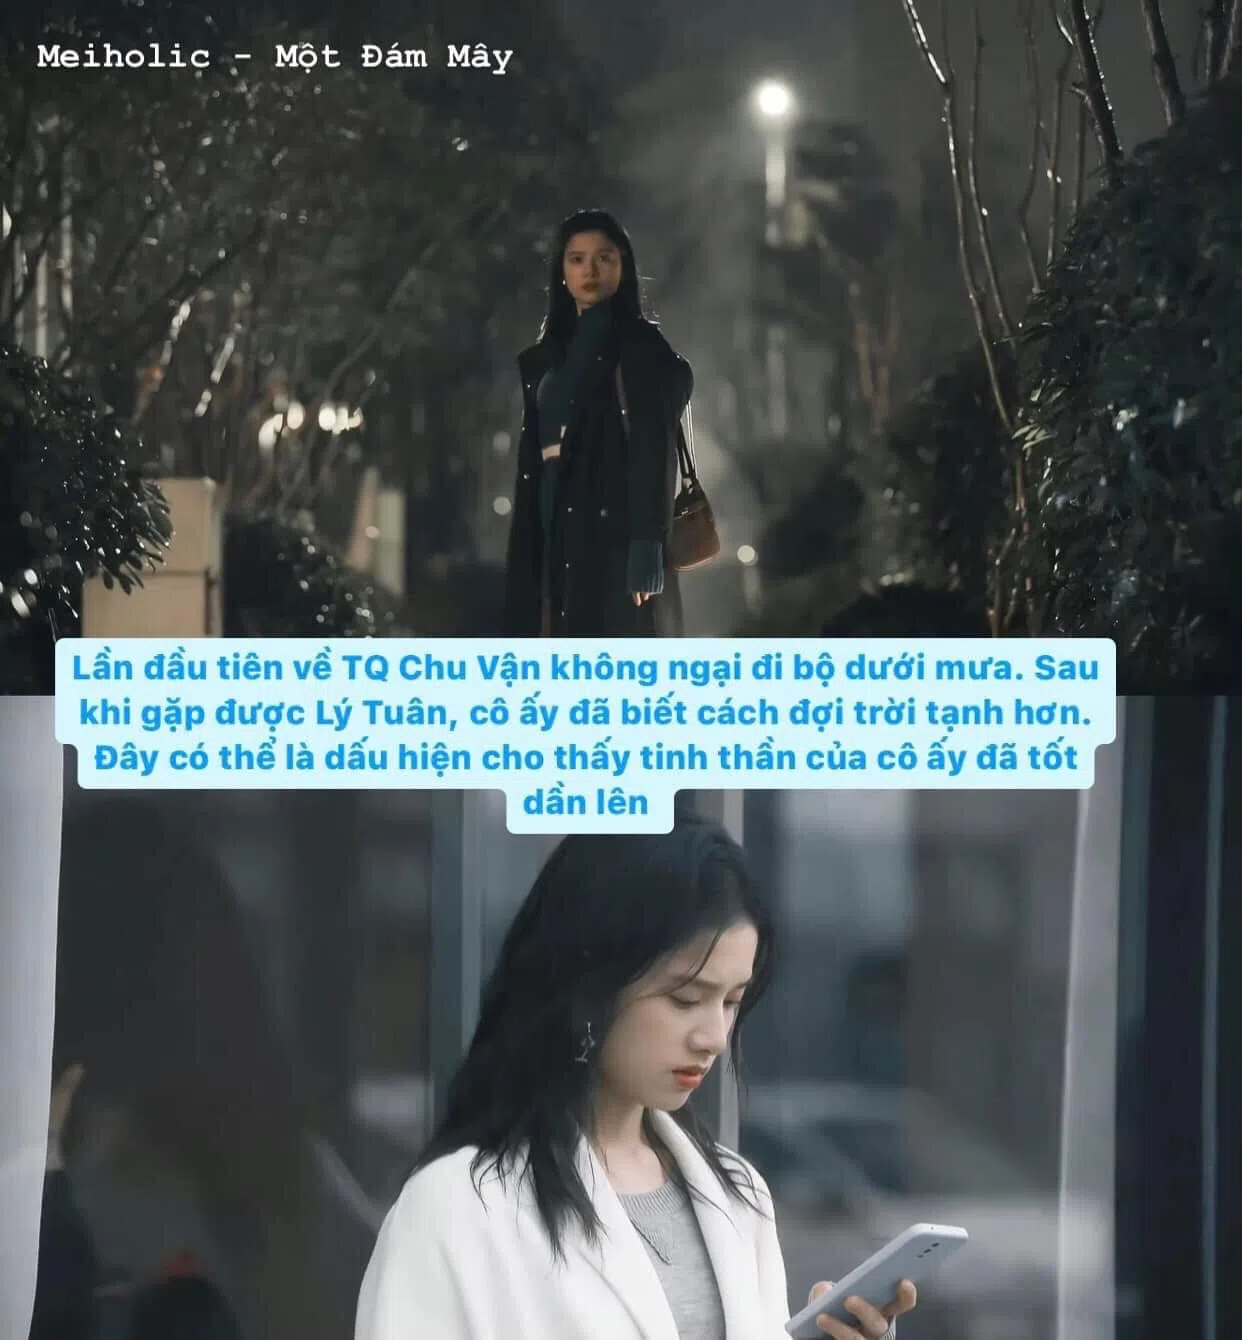 Lần đầu tiên về Trung Quốc, Chu Vận đã dầm mưa. Kể từ sau khi gặp được Lý Tuân, cô đã biết đợi mưa tạnh. Đây lại là một điểm tinh tế nữa của đạo diễn bởi nó ngầm cho thấy tinh thần Chu Vận đã khởi sắc.